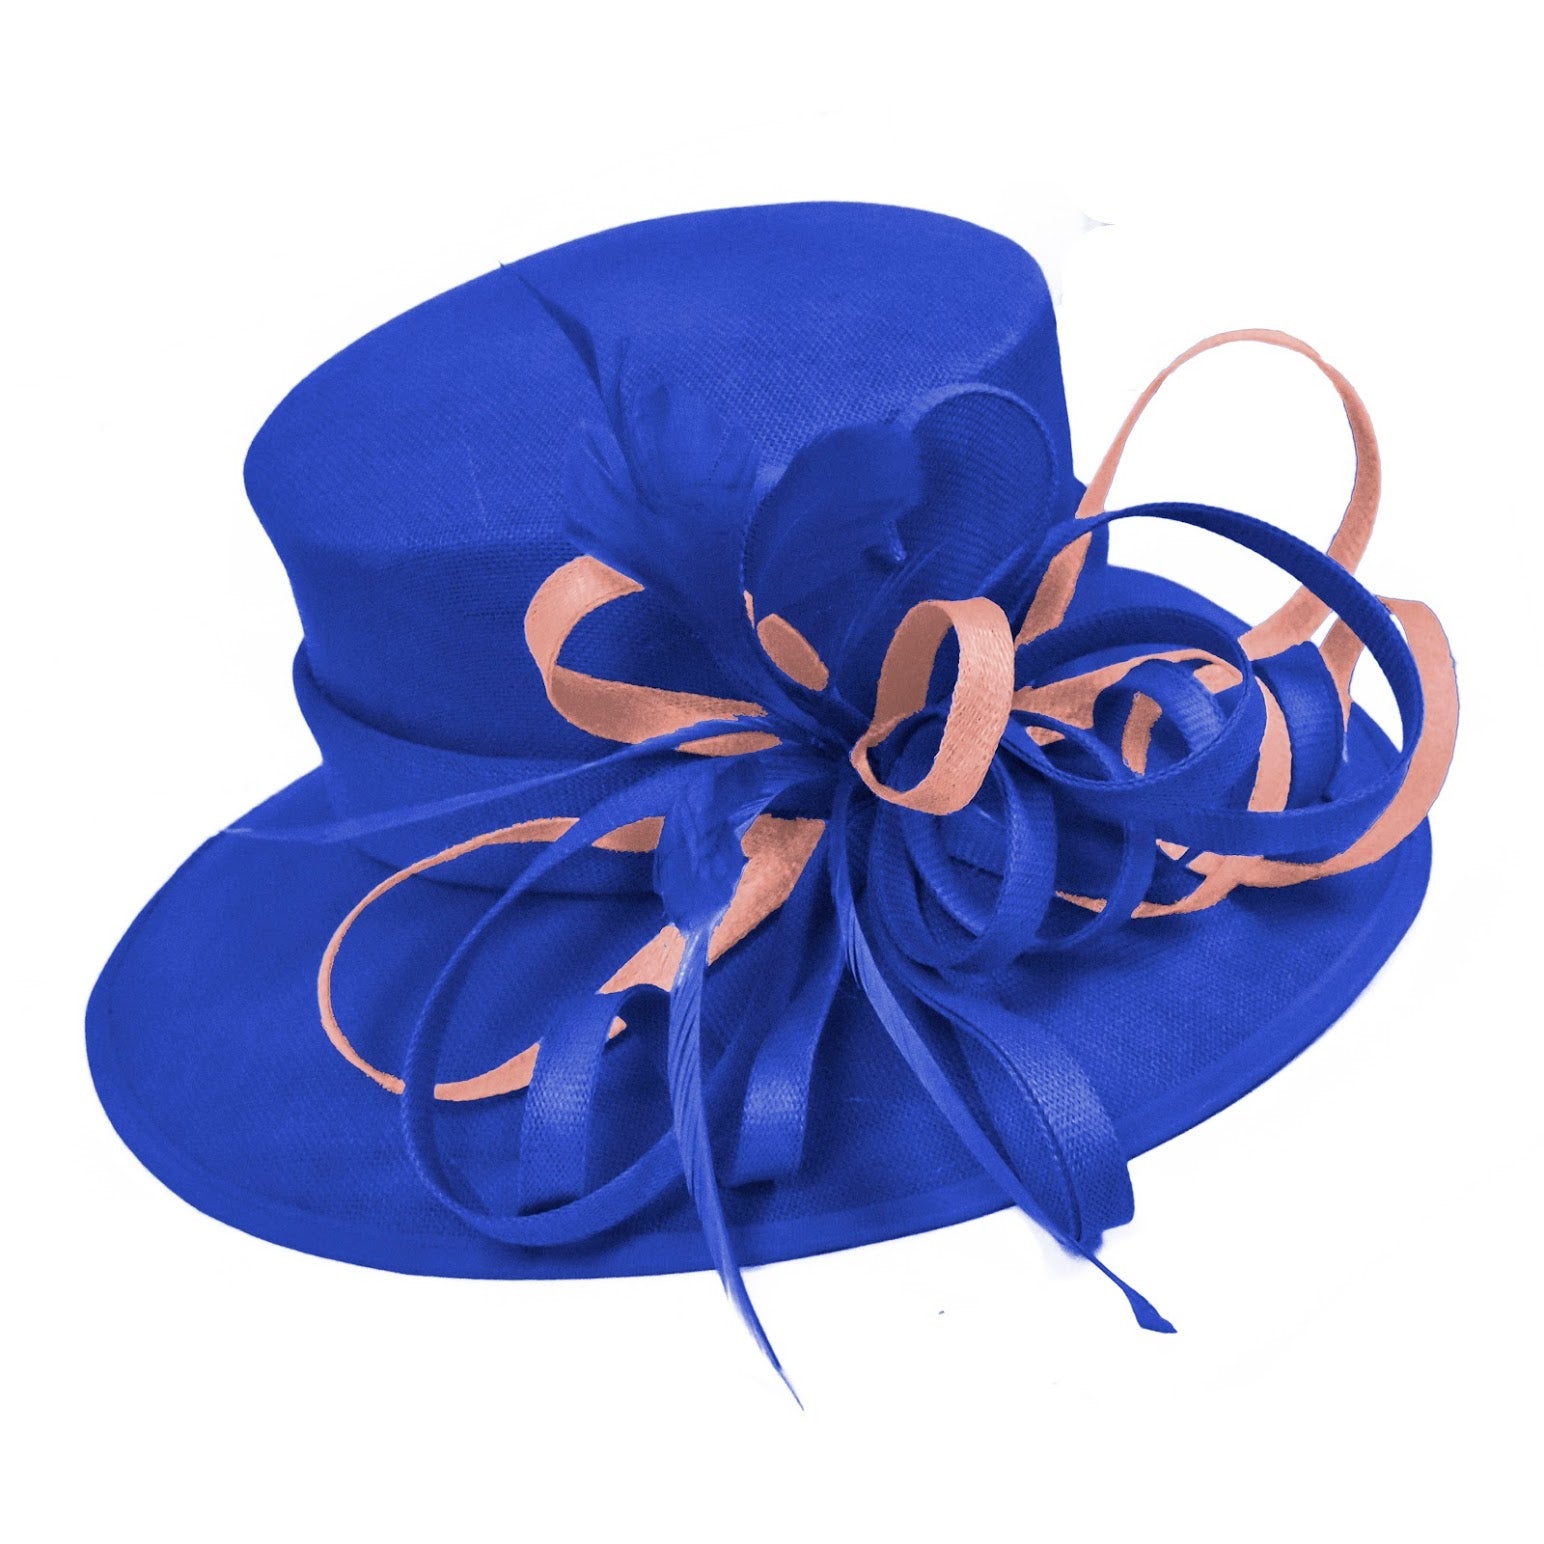 Bleu Royal et rose poussiéreux grand chapeau à bord de reine Occasion Hatinator bibi mariages formels